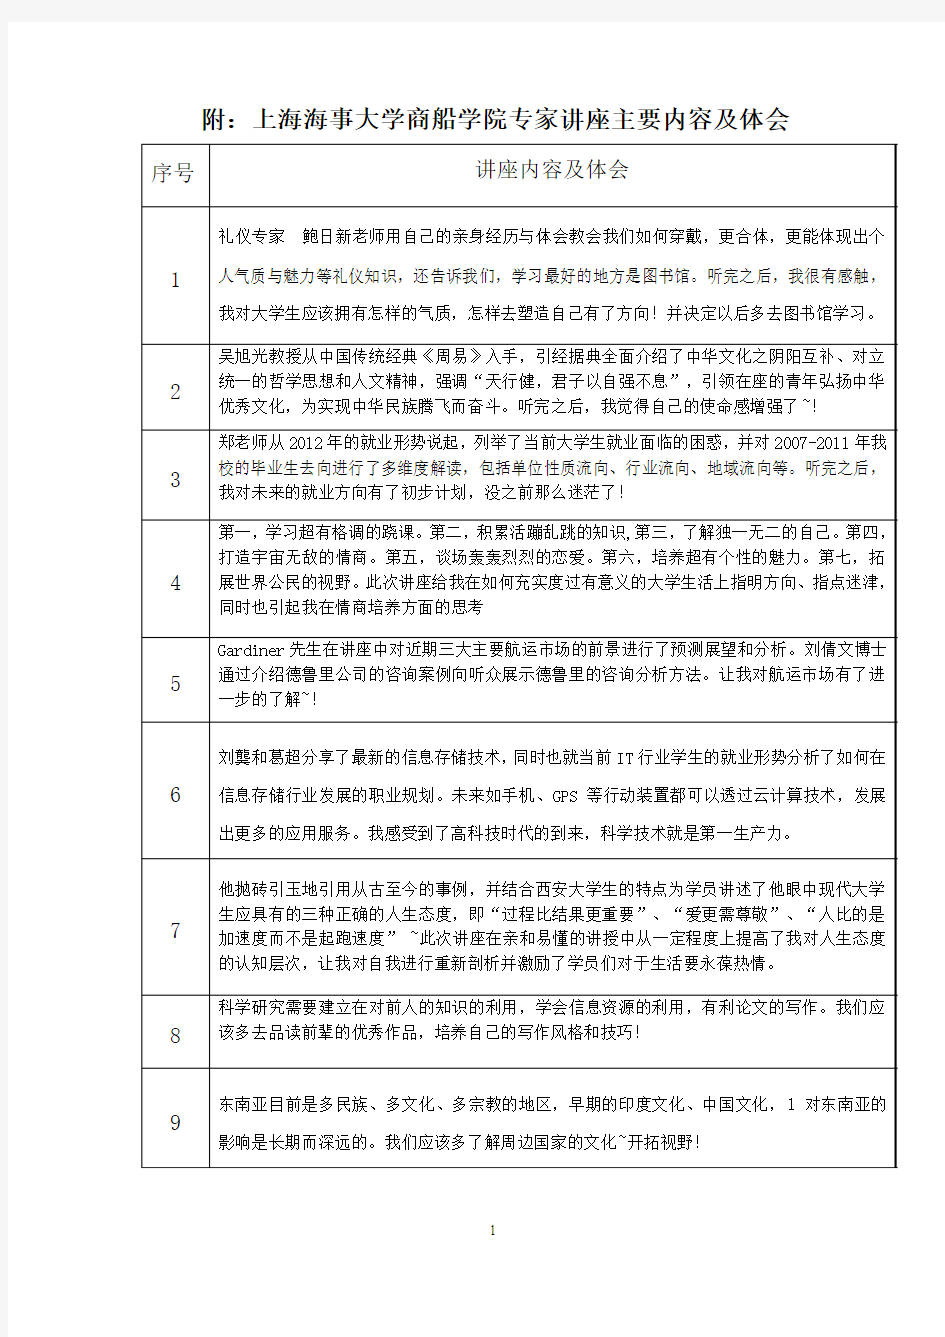 上海海事大学第二课堂讲座学分申请表 .